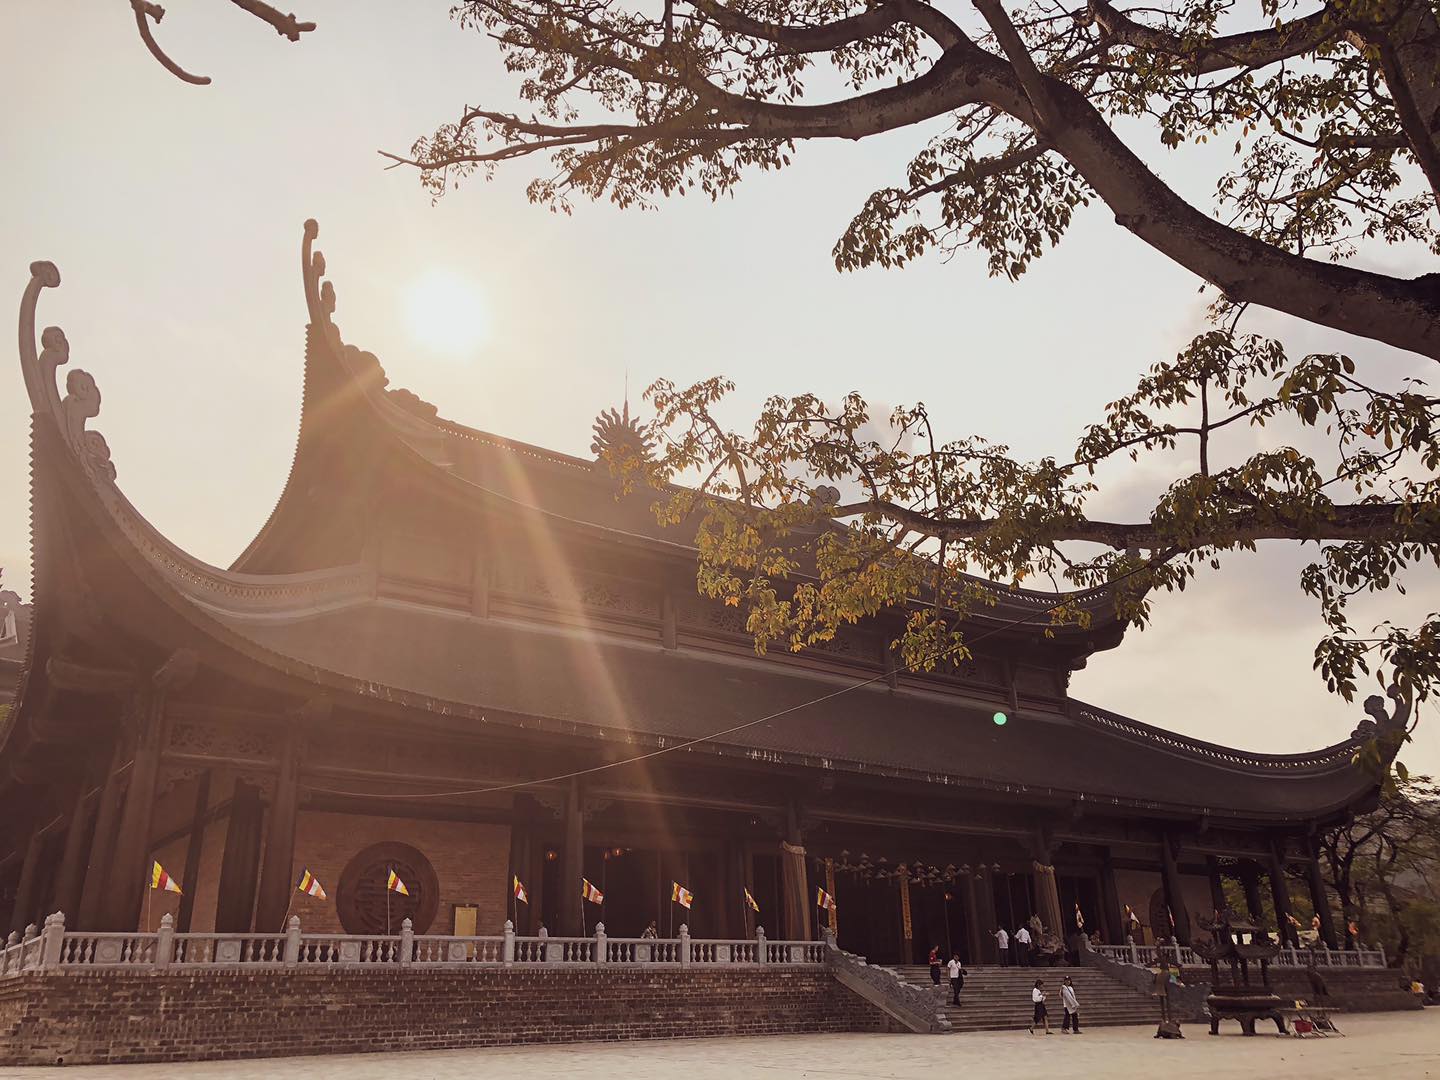 Hình ảnh chùa Tam Chúc dưới ánh nắng